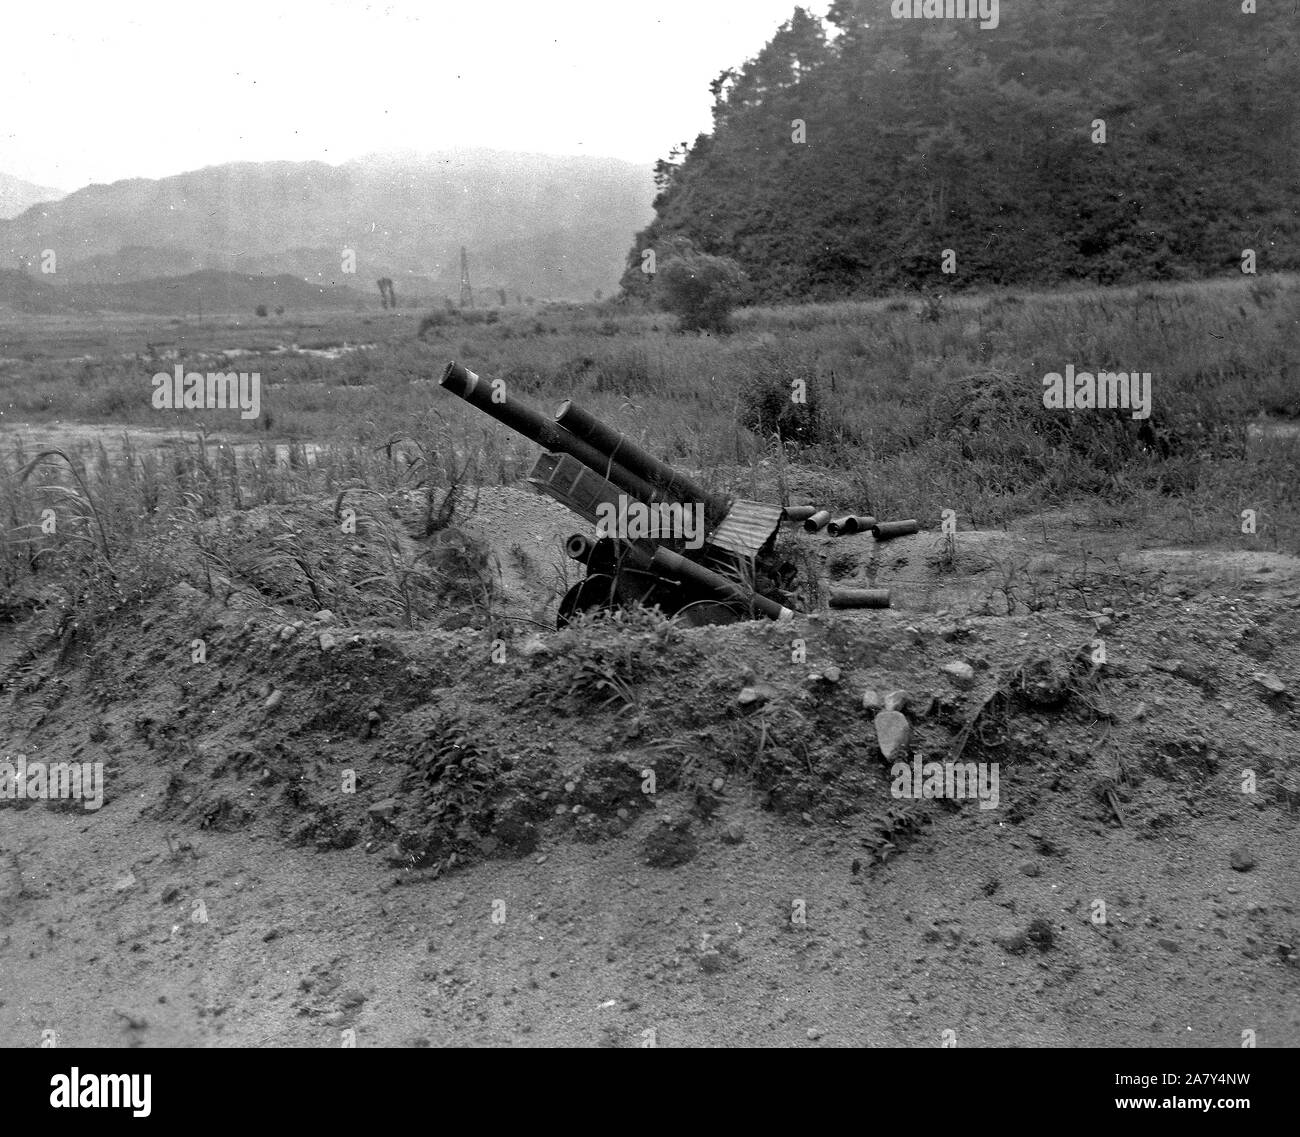 Des tentatives d'artillerie. République de Corée (ROK) troupes dans la 25e Division d'infanterie US Secteur en Corée mis en place cet obusier 105 mm dans le cadre d'un decoyed ligne de tir à deux pas de puissance de feu de l'ennemi par surprise ca. 8/1951 Banque D'Images